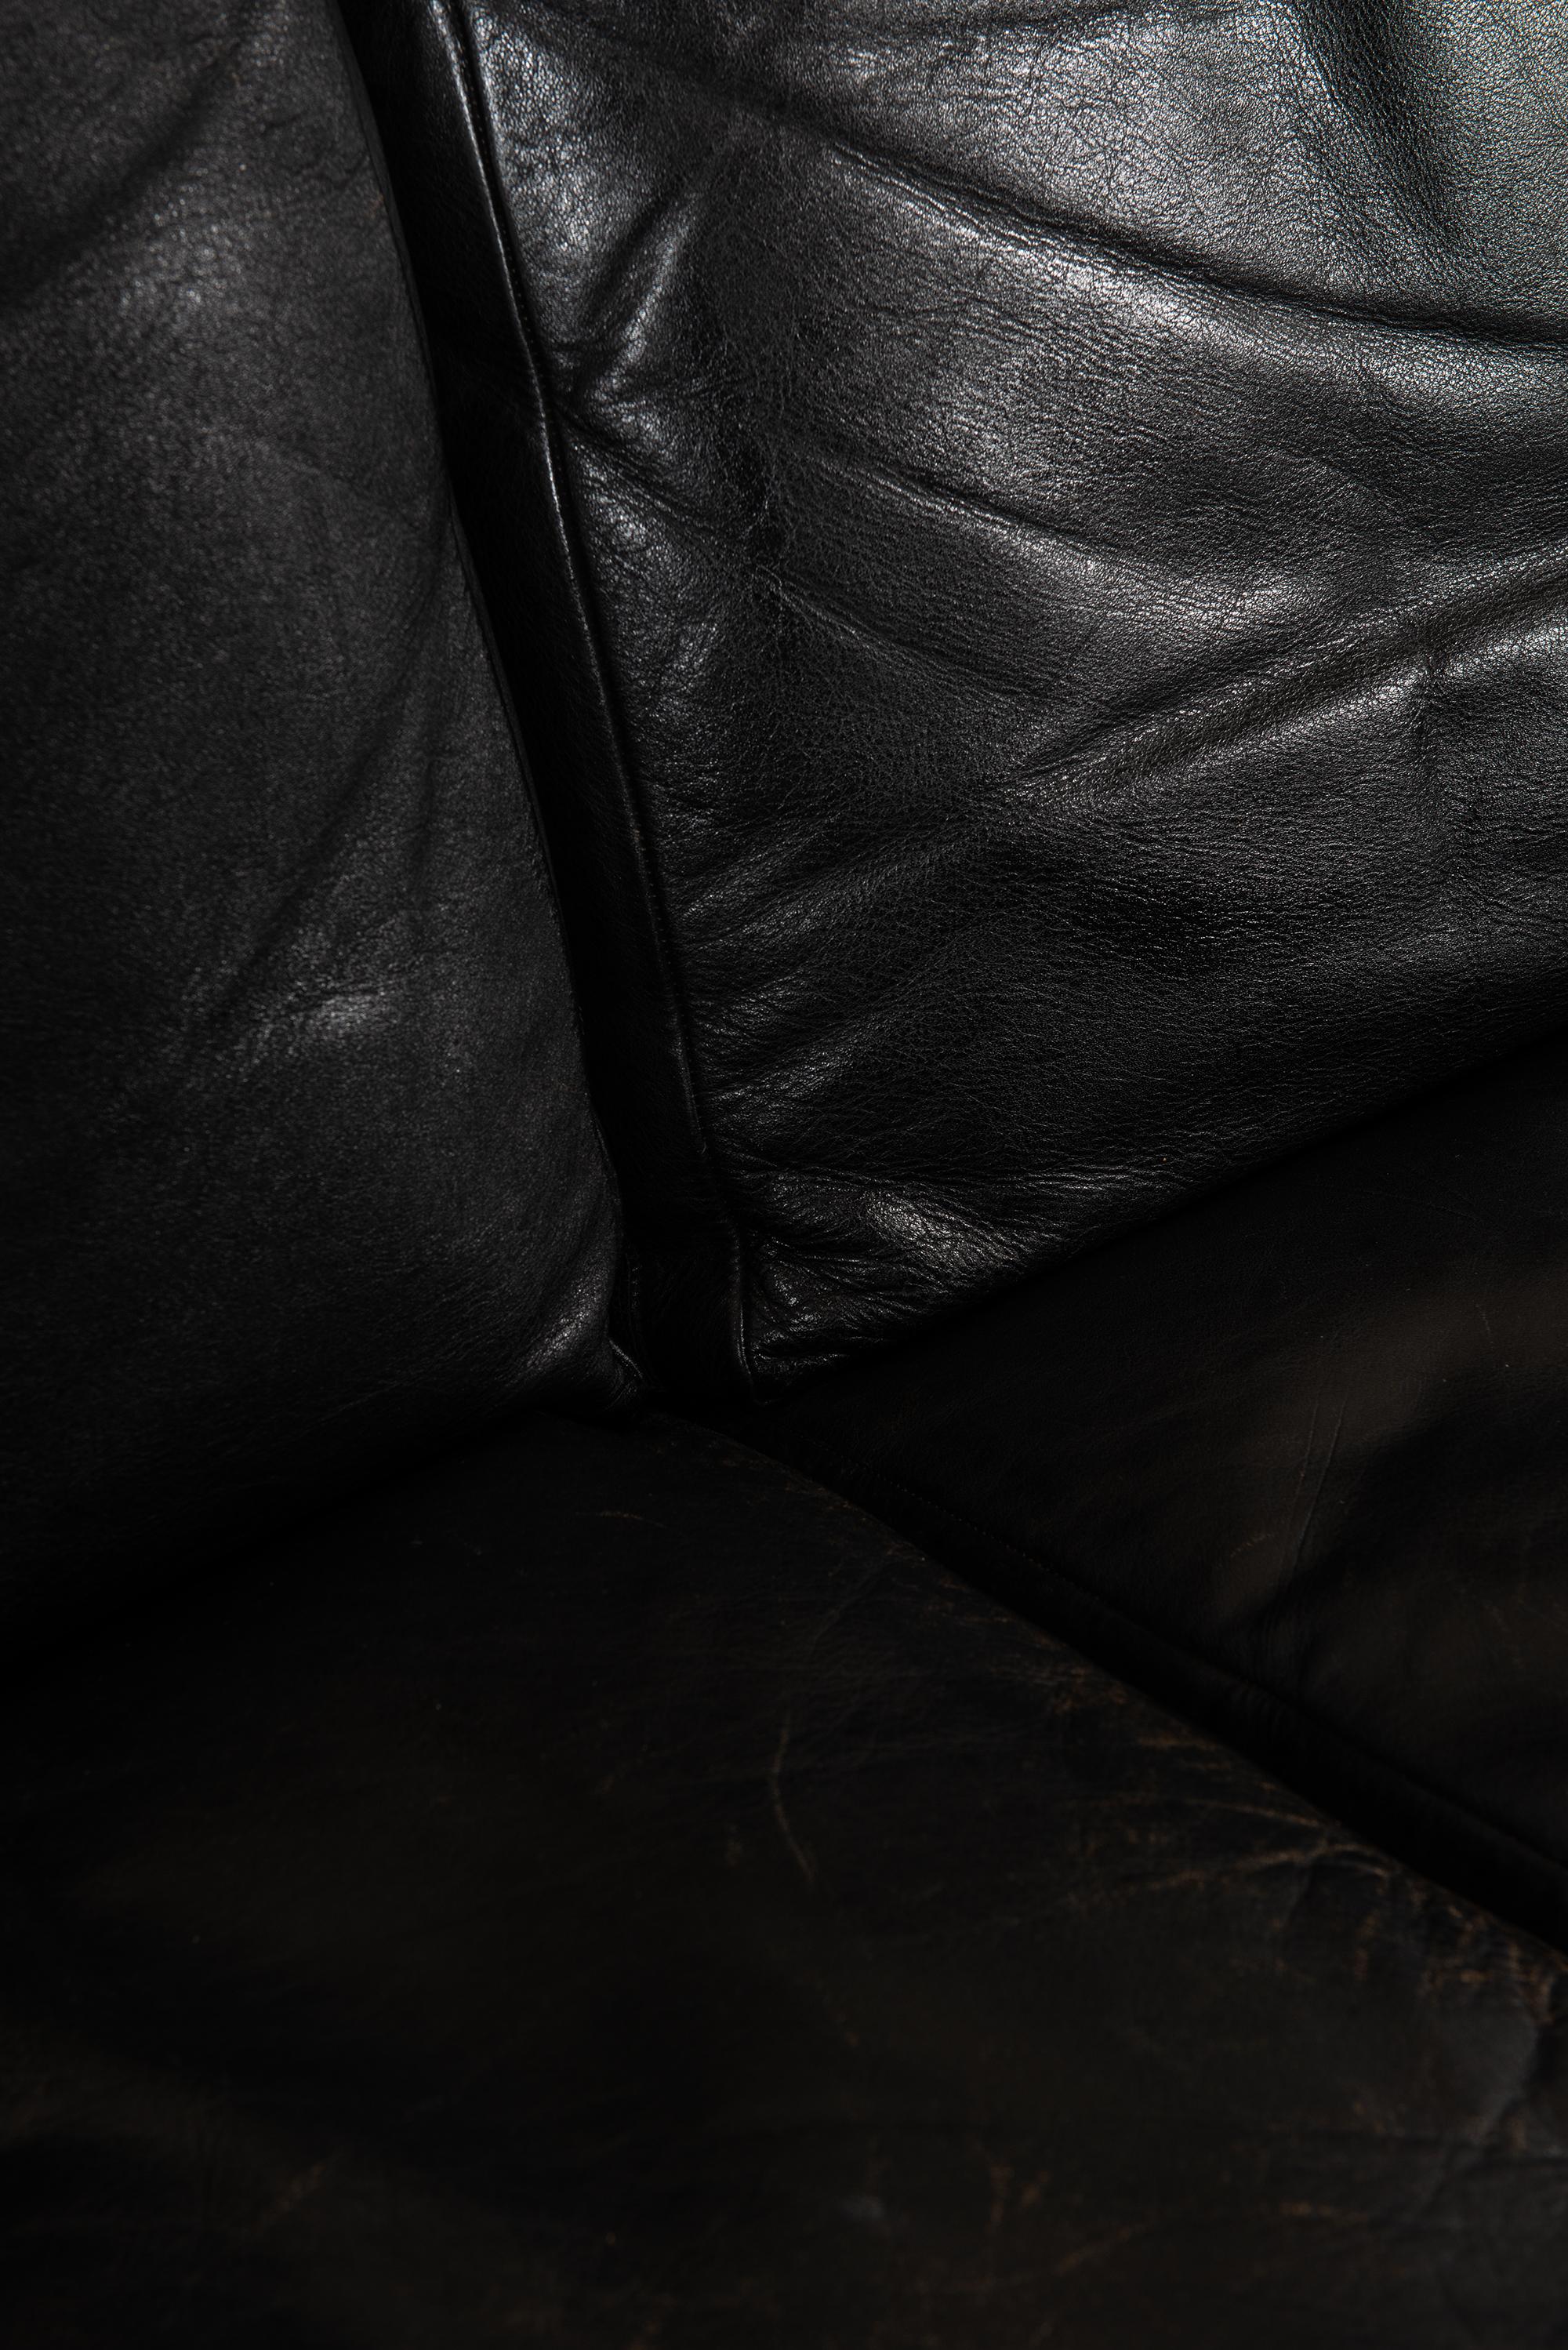 Sehr seltenes Sofa, entworfen von Illum Wikkelsø. Produziert von Michael Laursen in Dänemark.